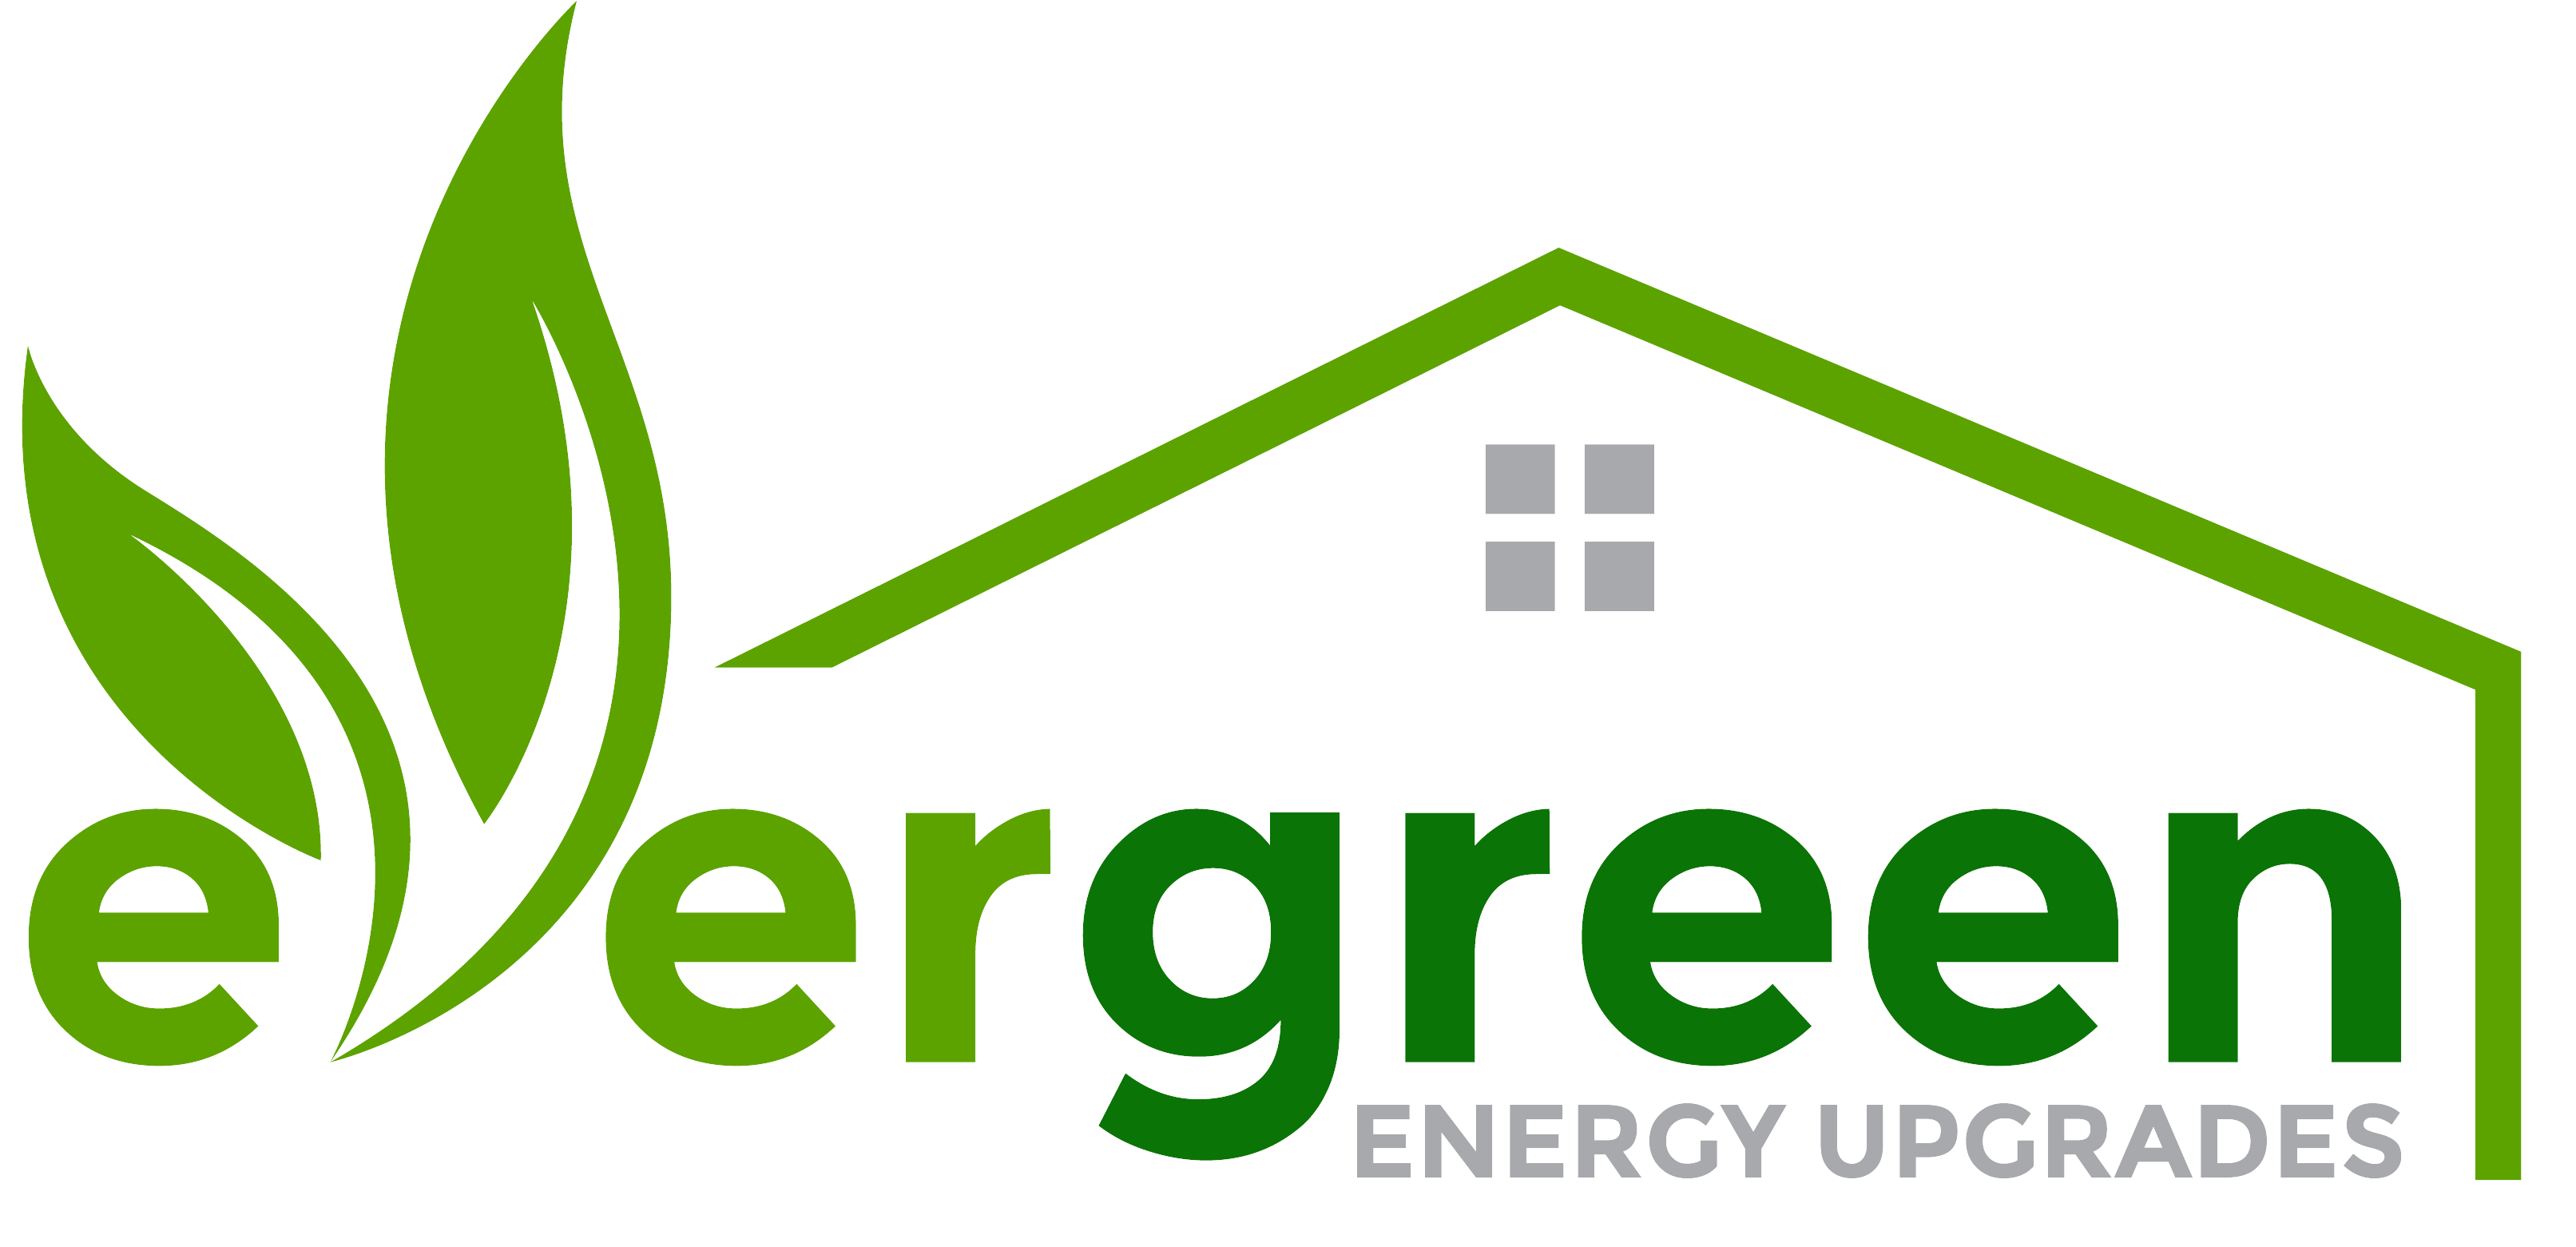 Evergreen Energy Upgrades 01